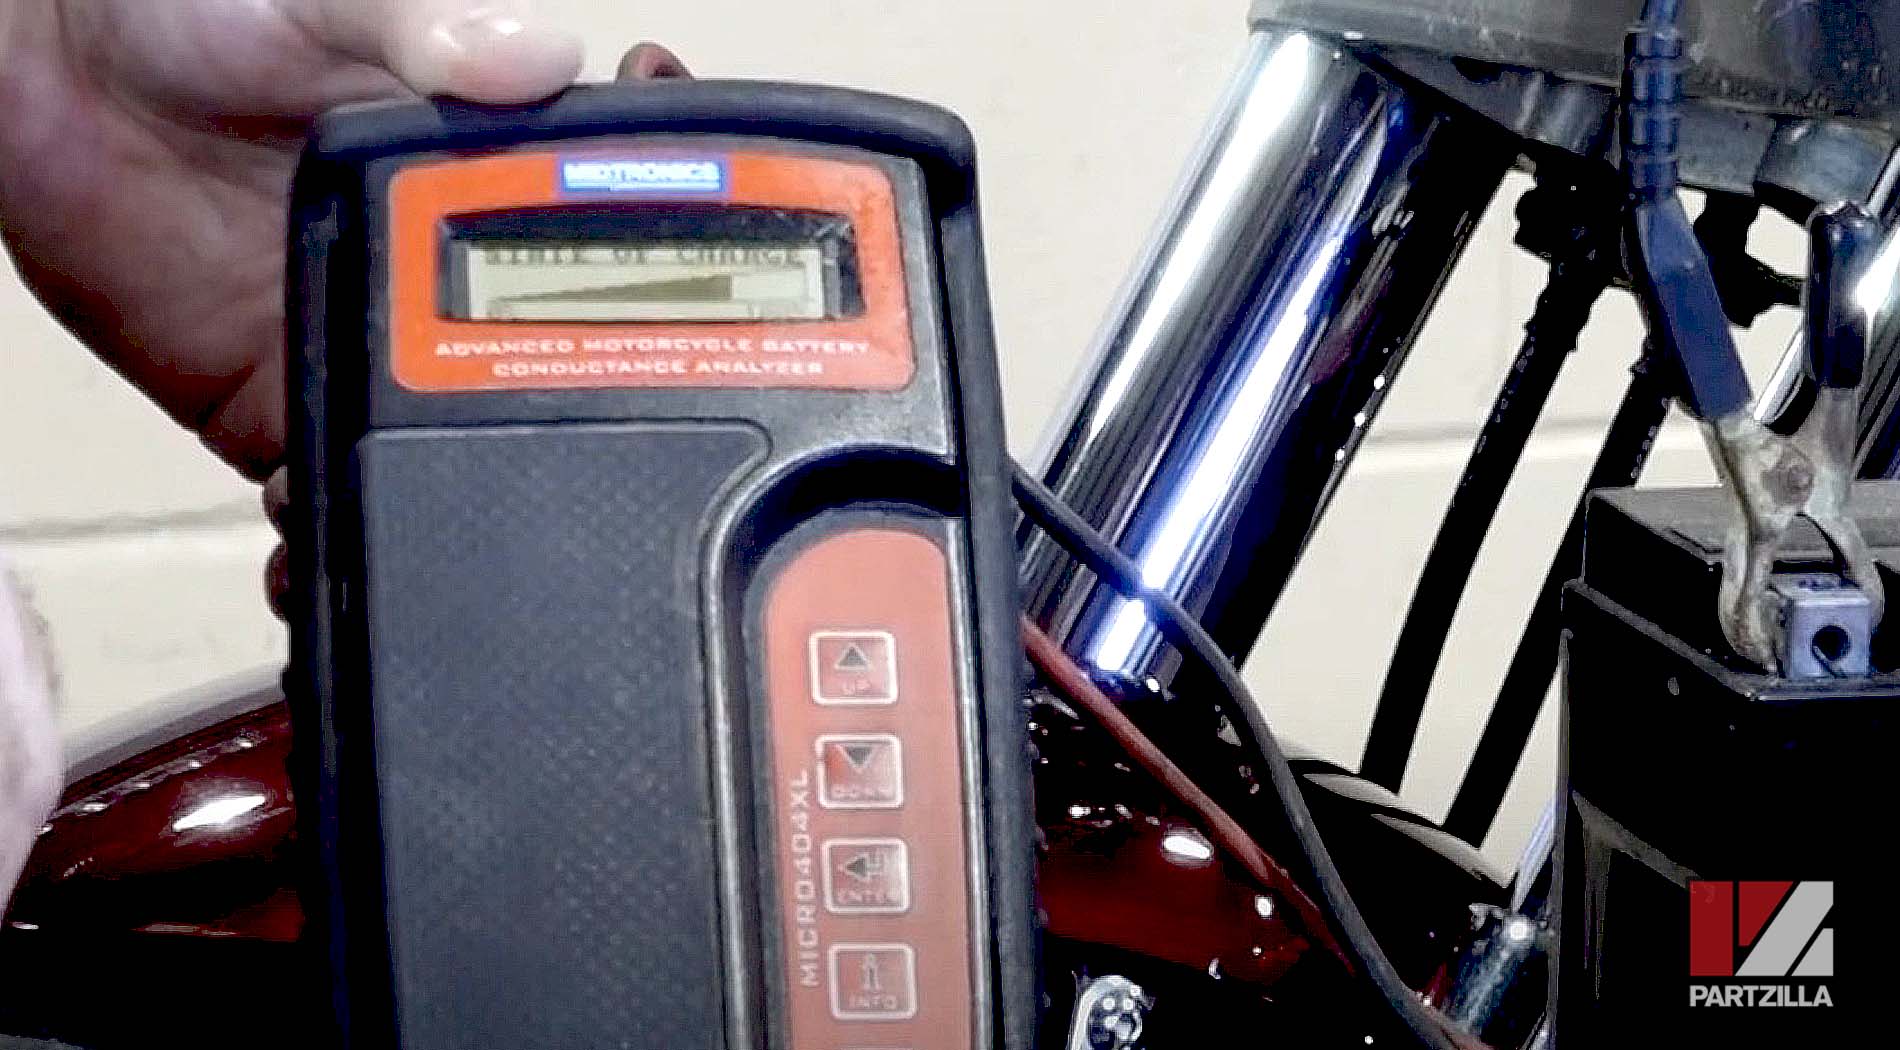 Honda VTX 1800 battery diagnostics